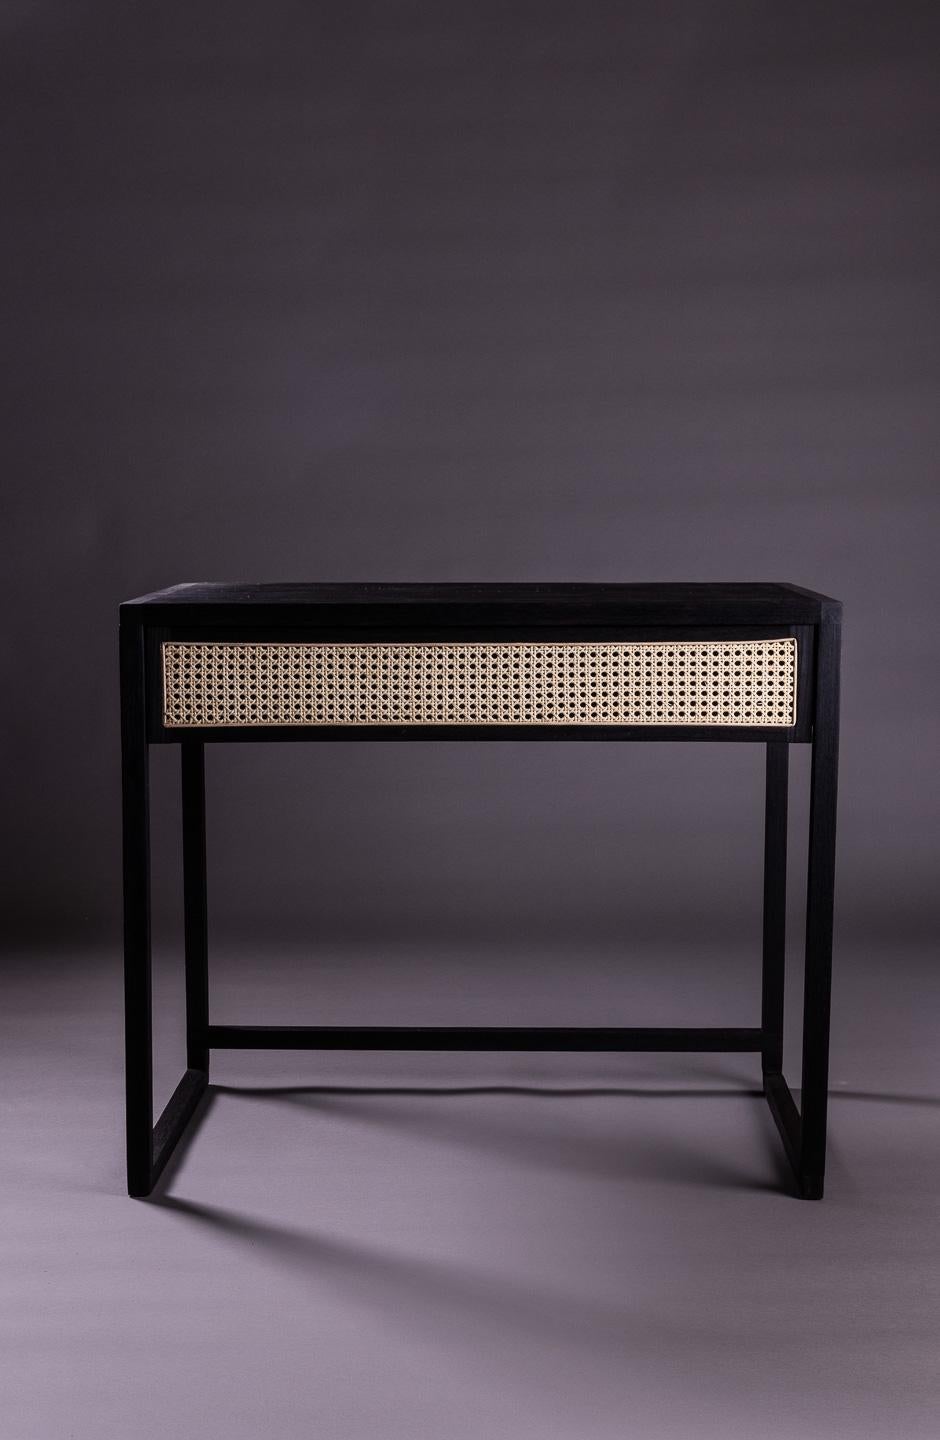 Der Square Desk wurde vom Design moderner brasilianischer Möbel aus den 1950er und 1960er Jahren inspiriert, die sich durch gerade Linien und indisches Strohgeflecht auszeichnen. Er ist zart und sehr komfortabel für den täglichen Gebrauch und